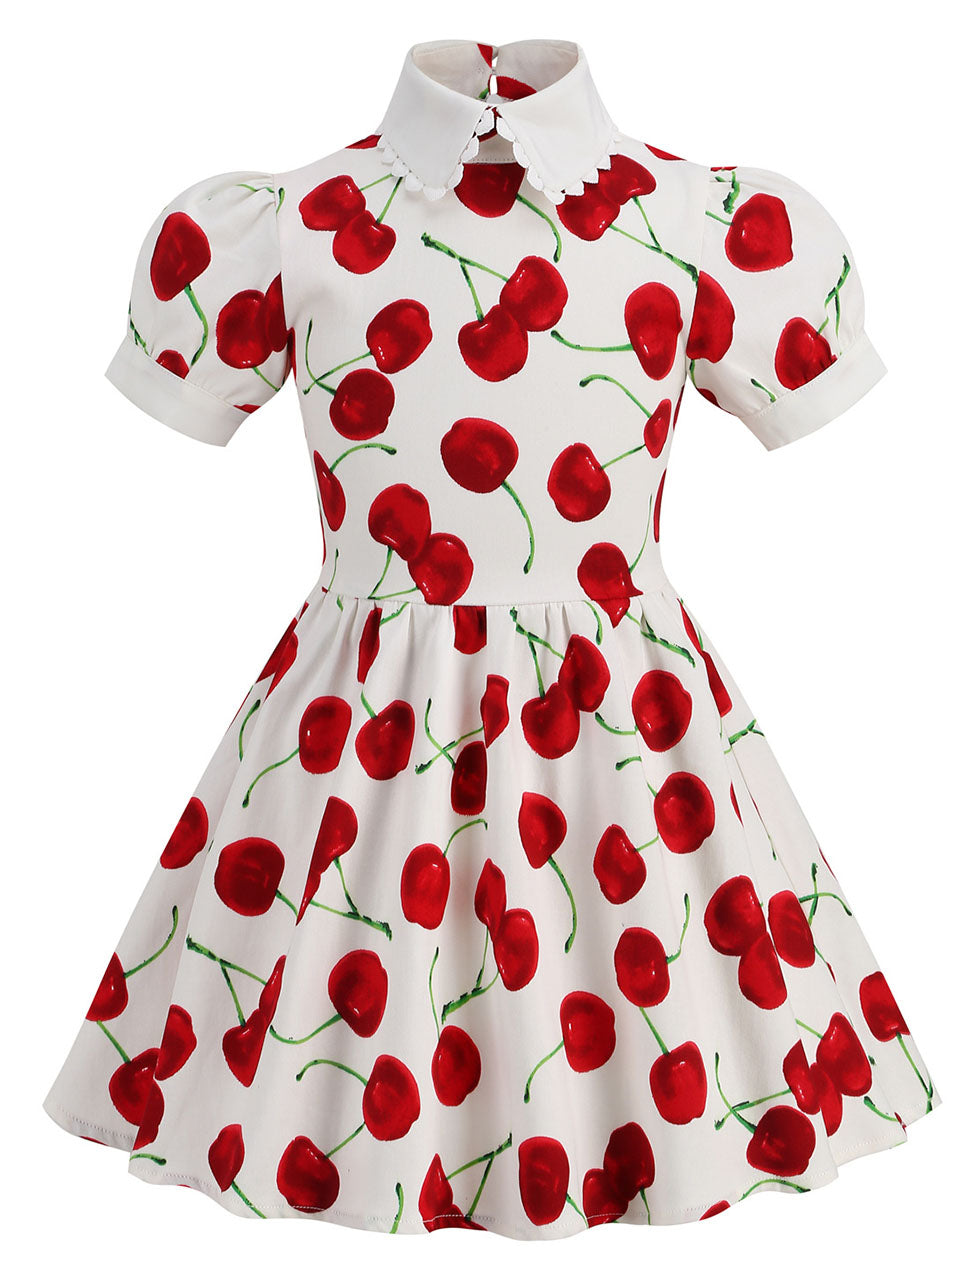 Kids Little Girls' Dress Cherry Peter Pan Collar 1950S Dress With Pockets